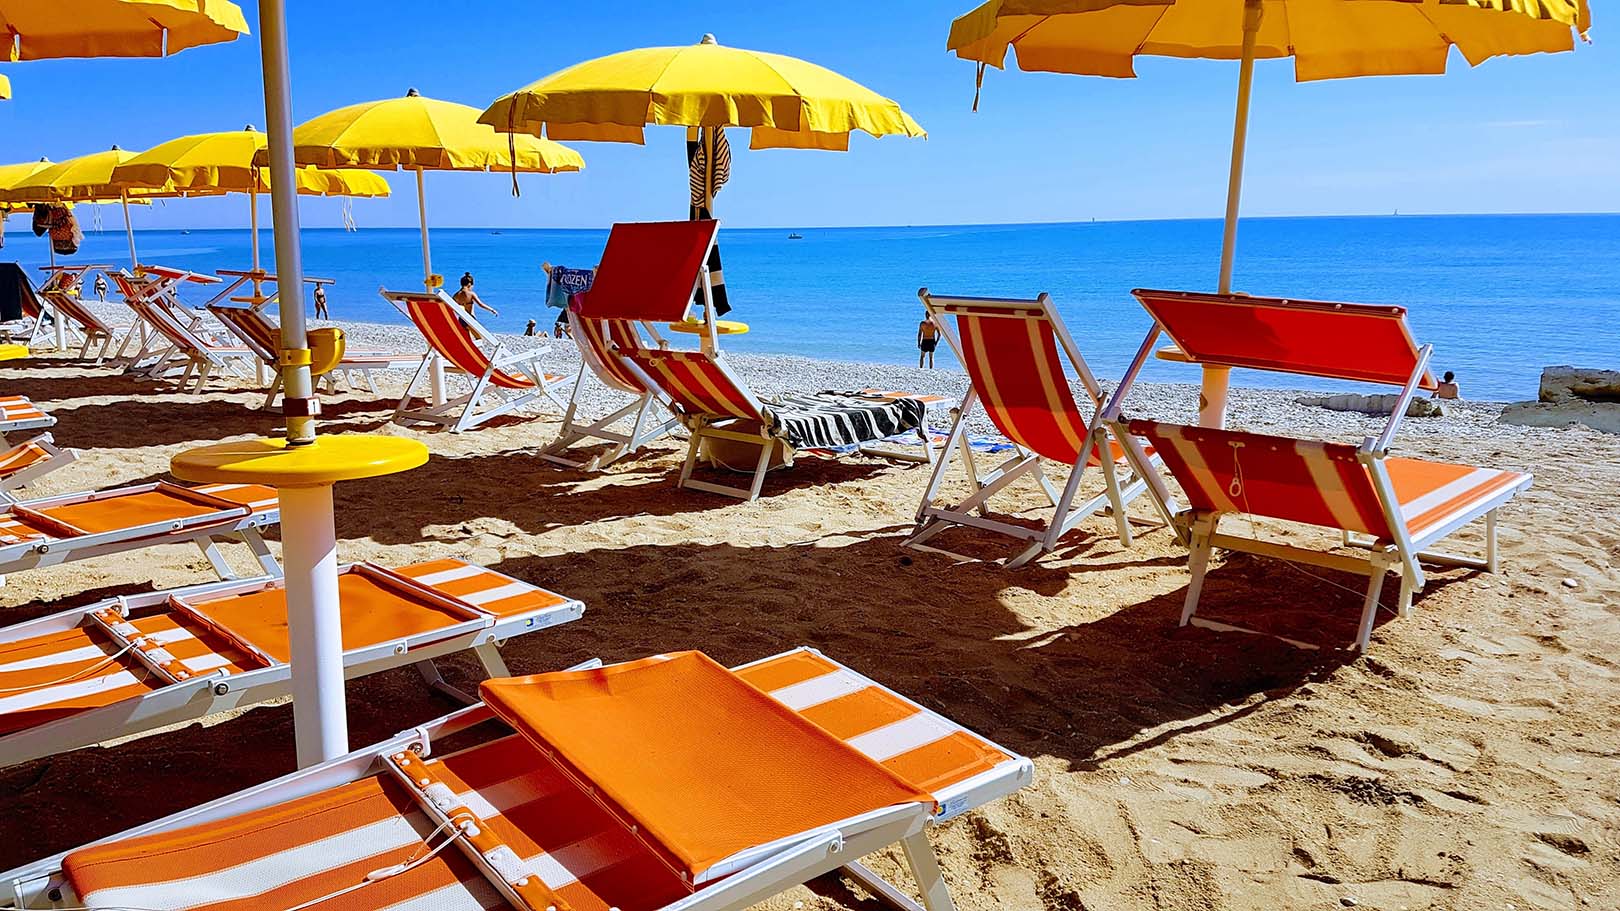 Stagione balneare in Sicilia, si parte l'1 maggio. Dal ministero le regole anti-Covid in spiaggia